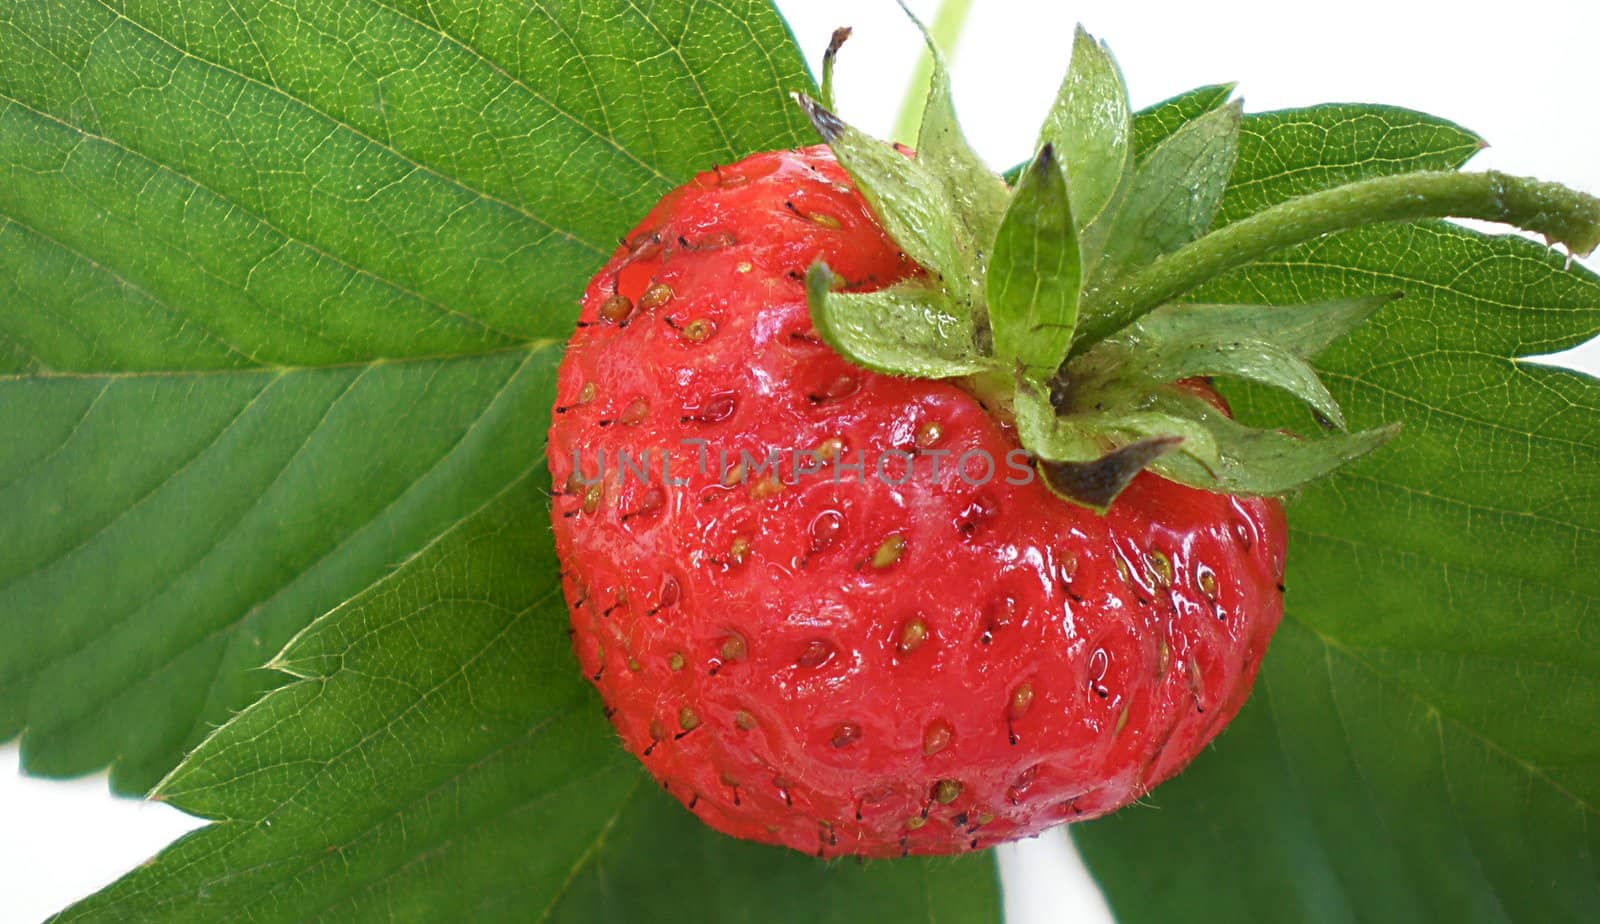 strawberries by Dessie_bg